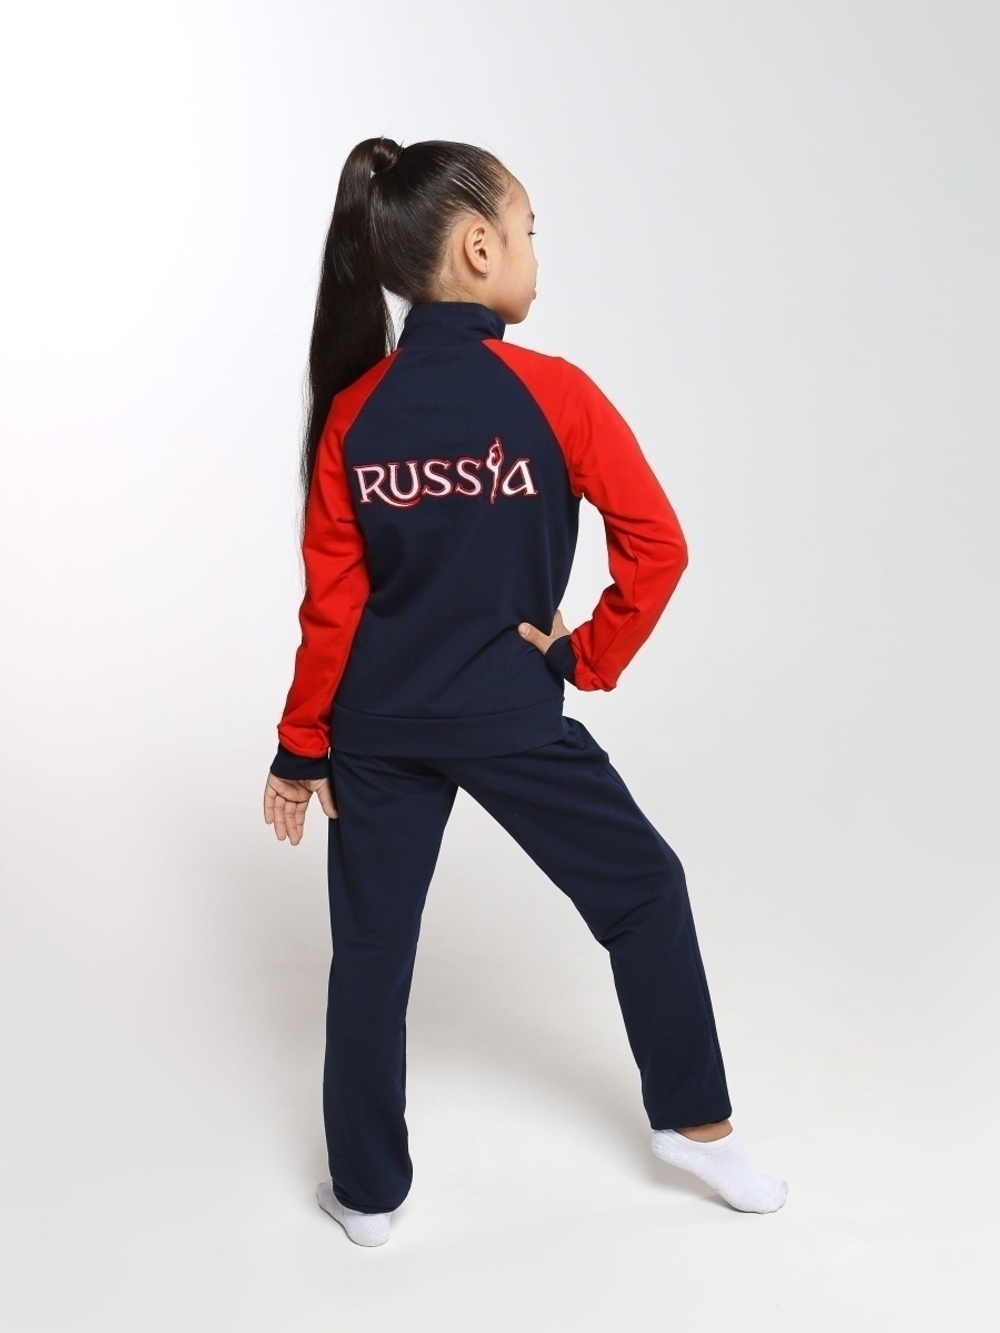 Спортивный костюм для девочки Россия красный рукав темно-синий